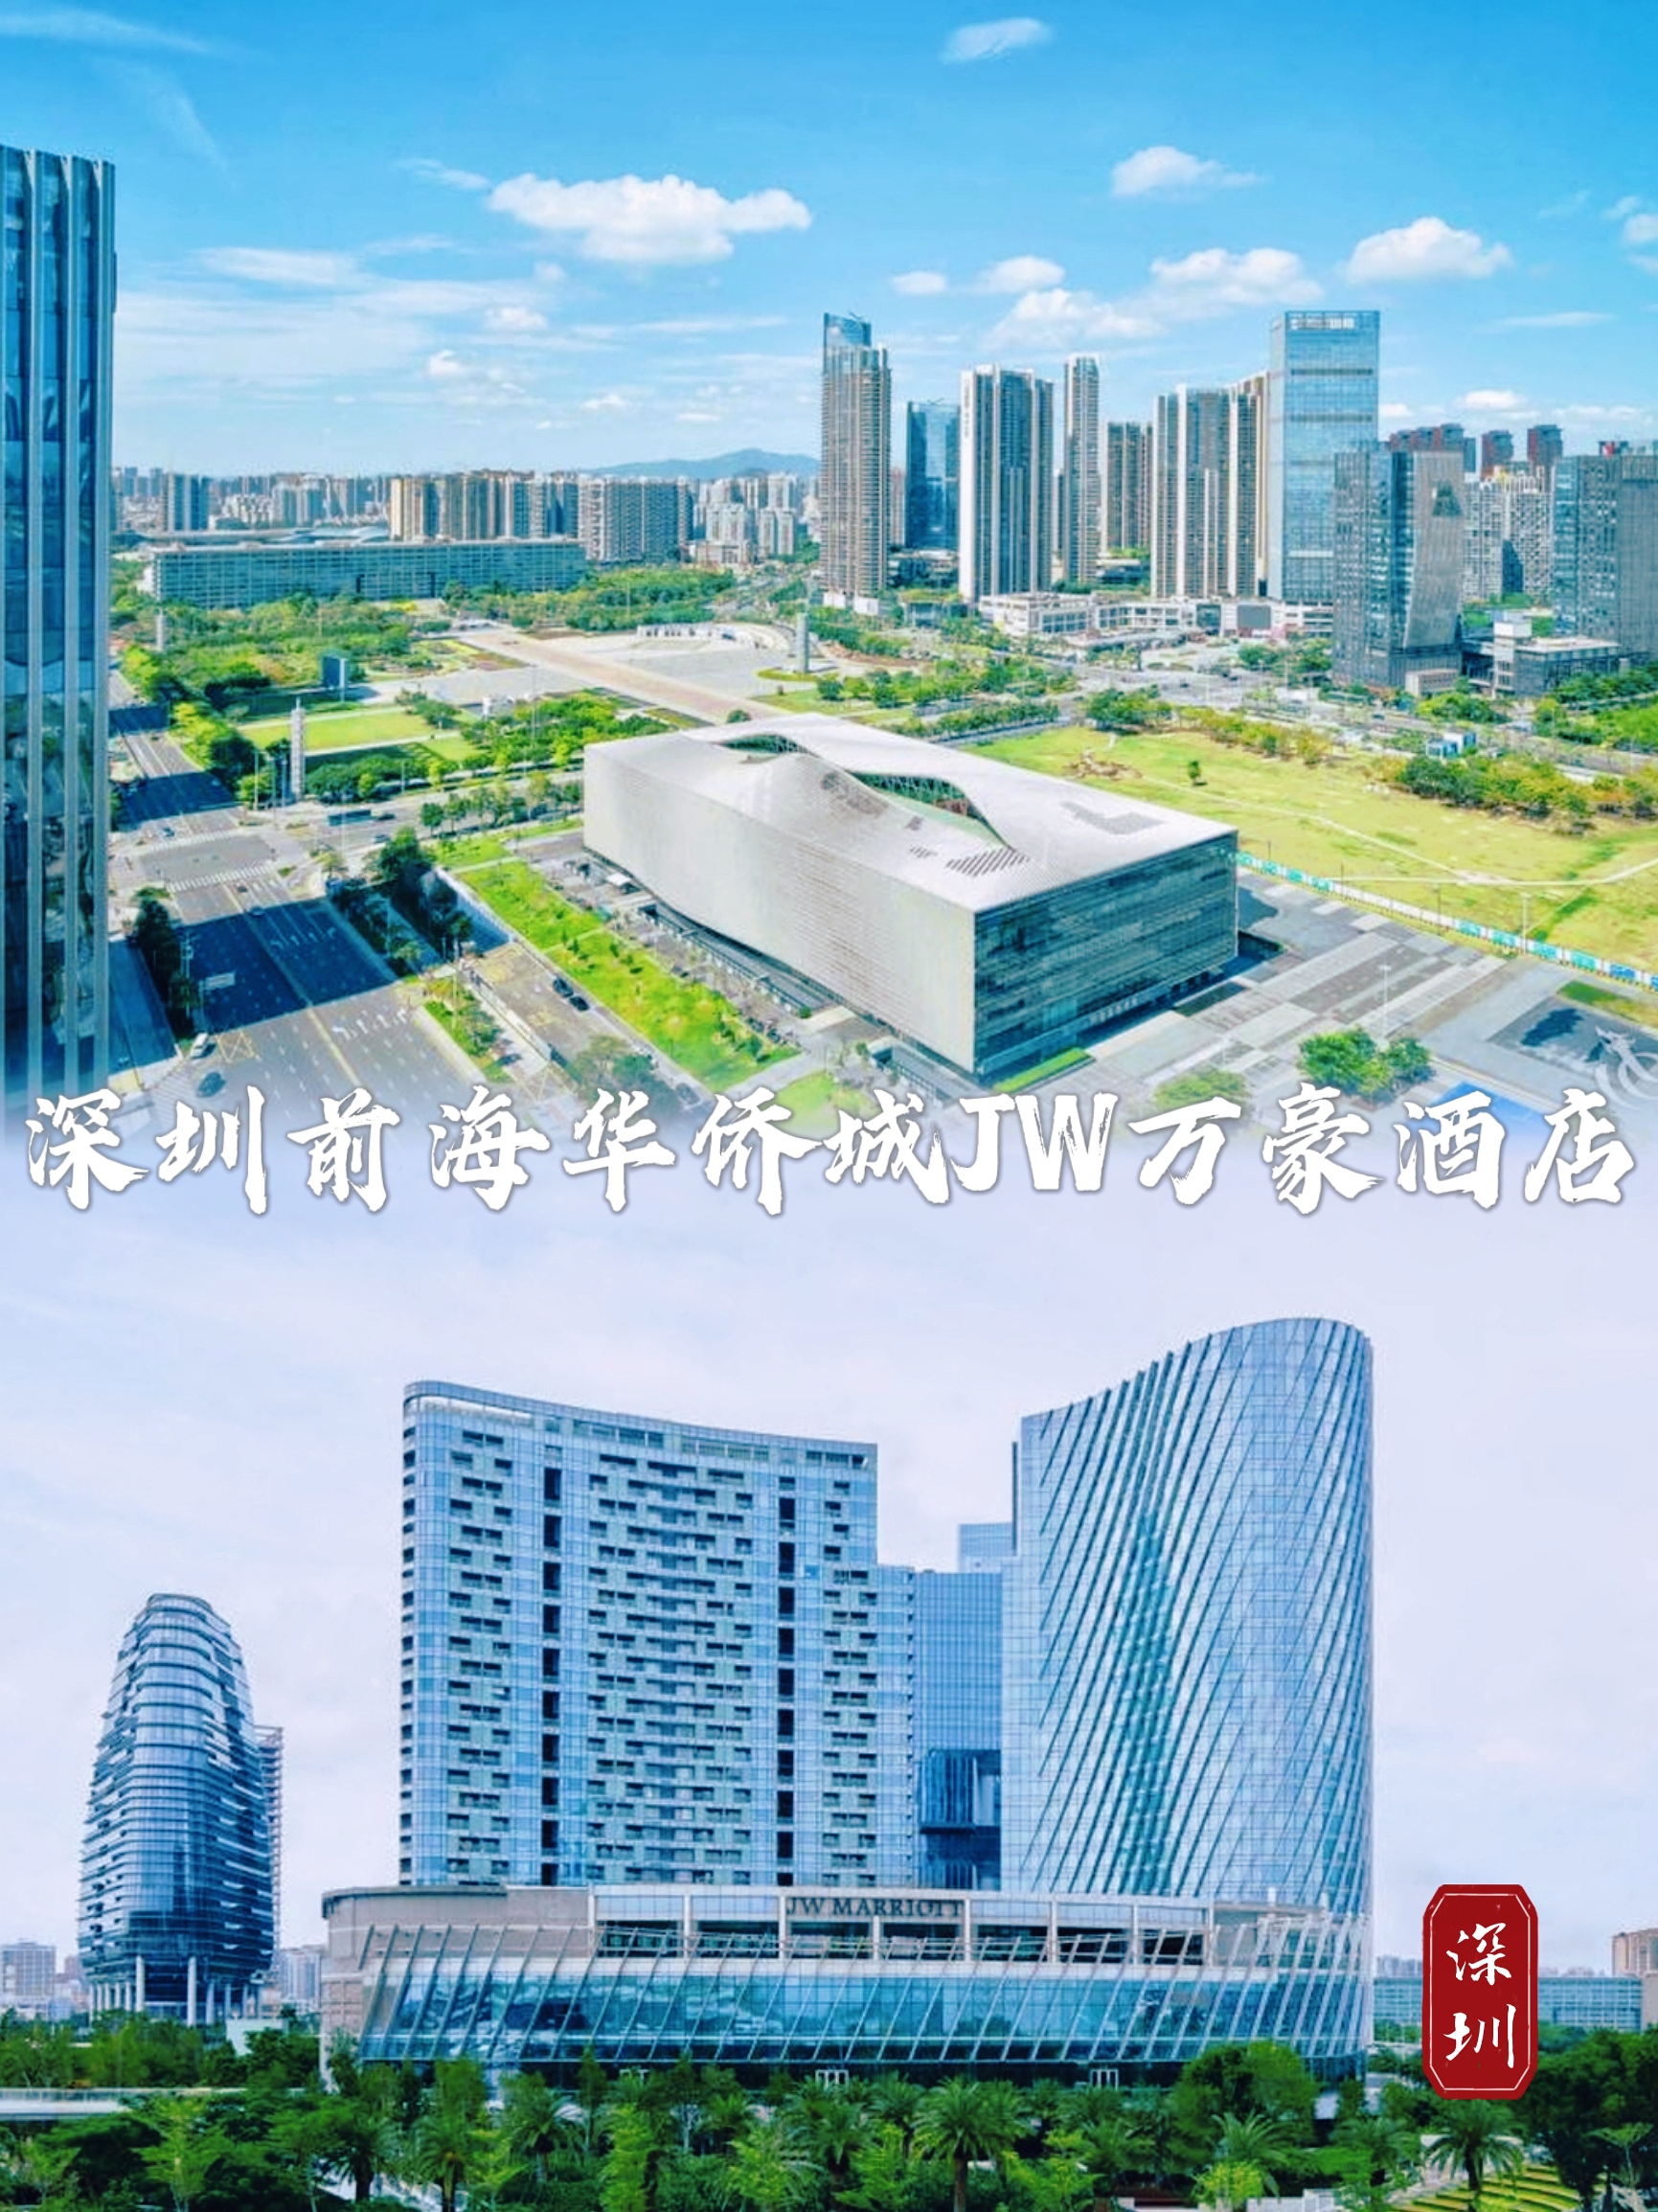 据说这是深圳地标性建筑酒店，确实不一样